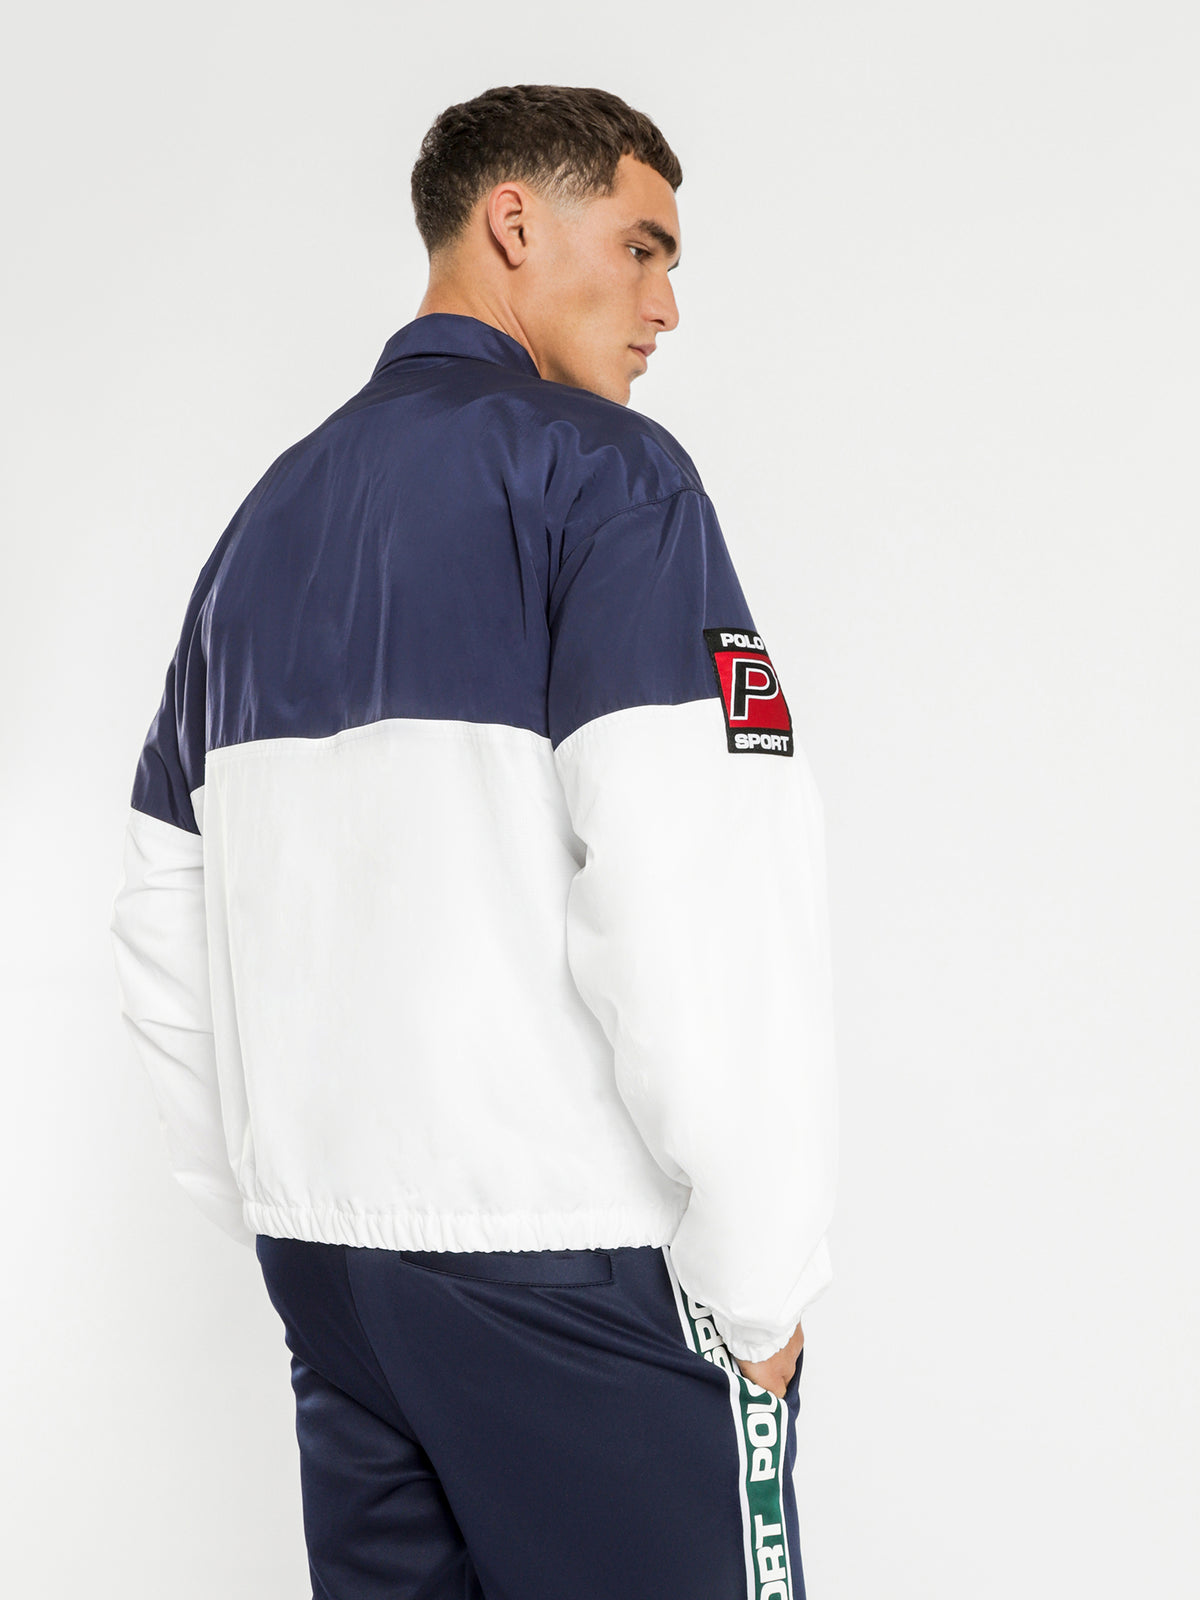 Polo Sport Logo Windbreaker Jacket in Navy & White - Glue Store